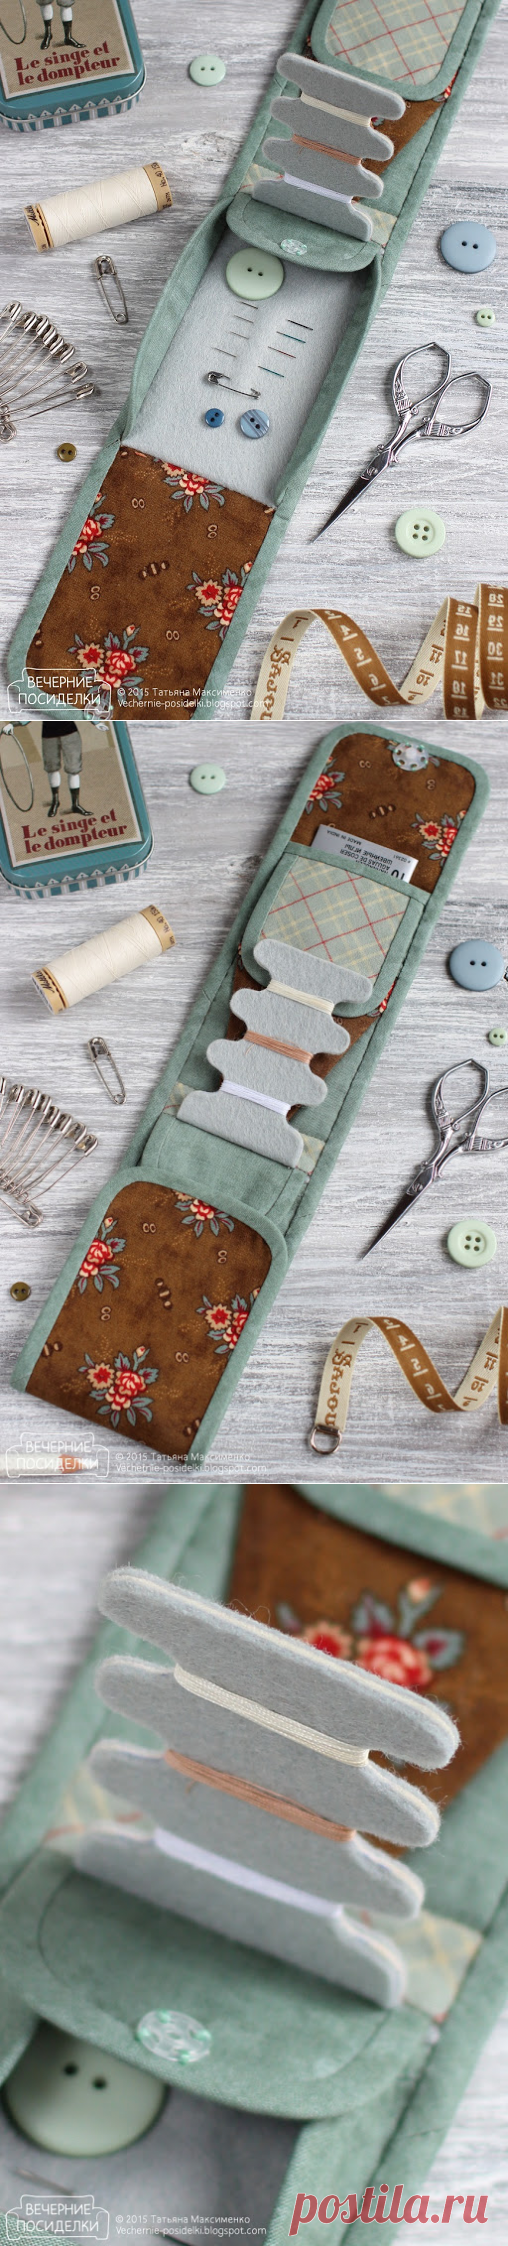 Мини швейный органайзер / Tiny sewing kit - Вечерние посиделки